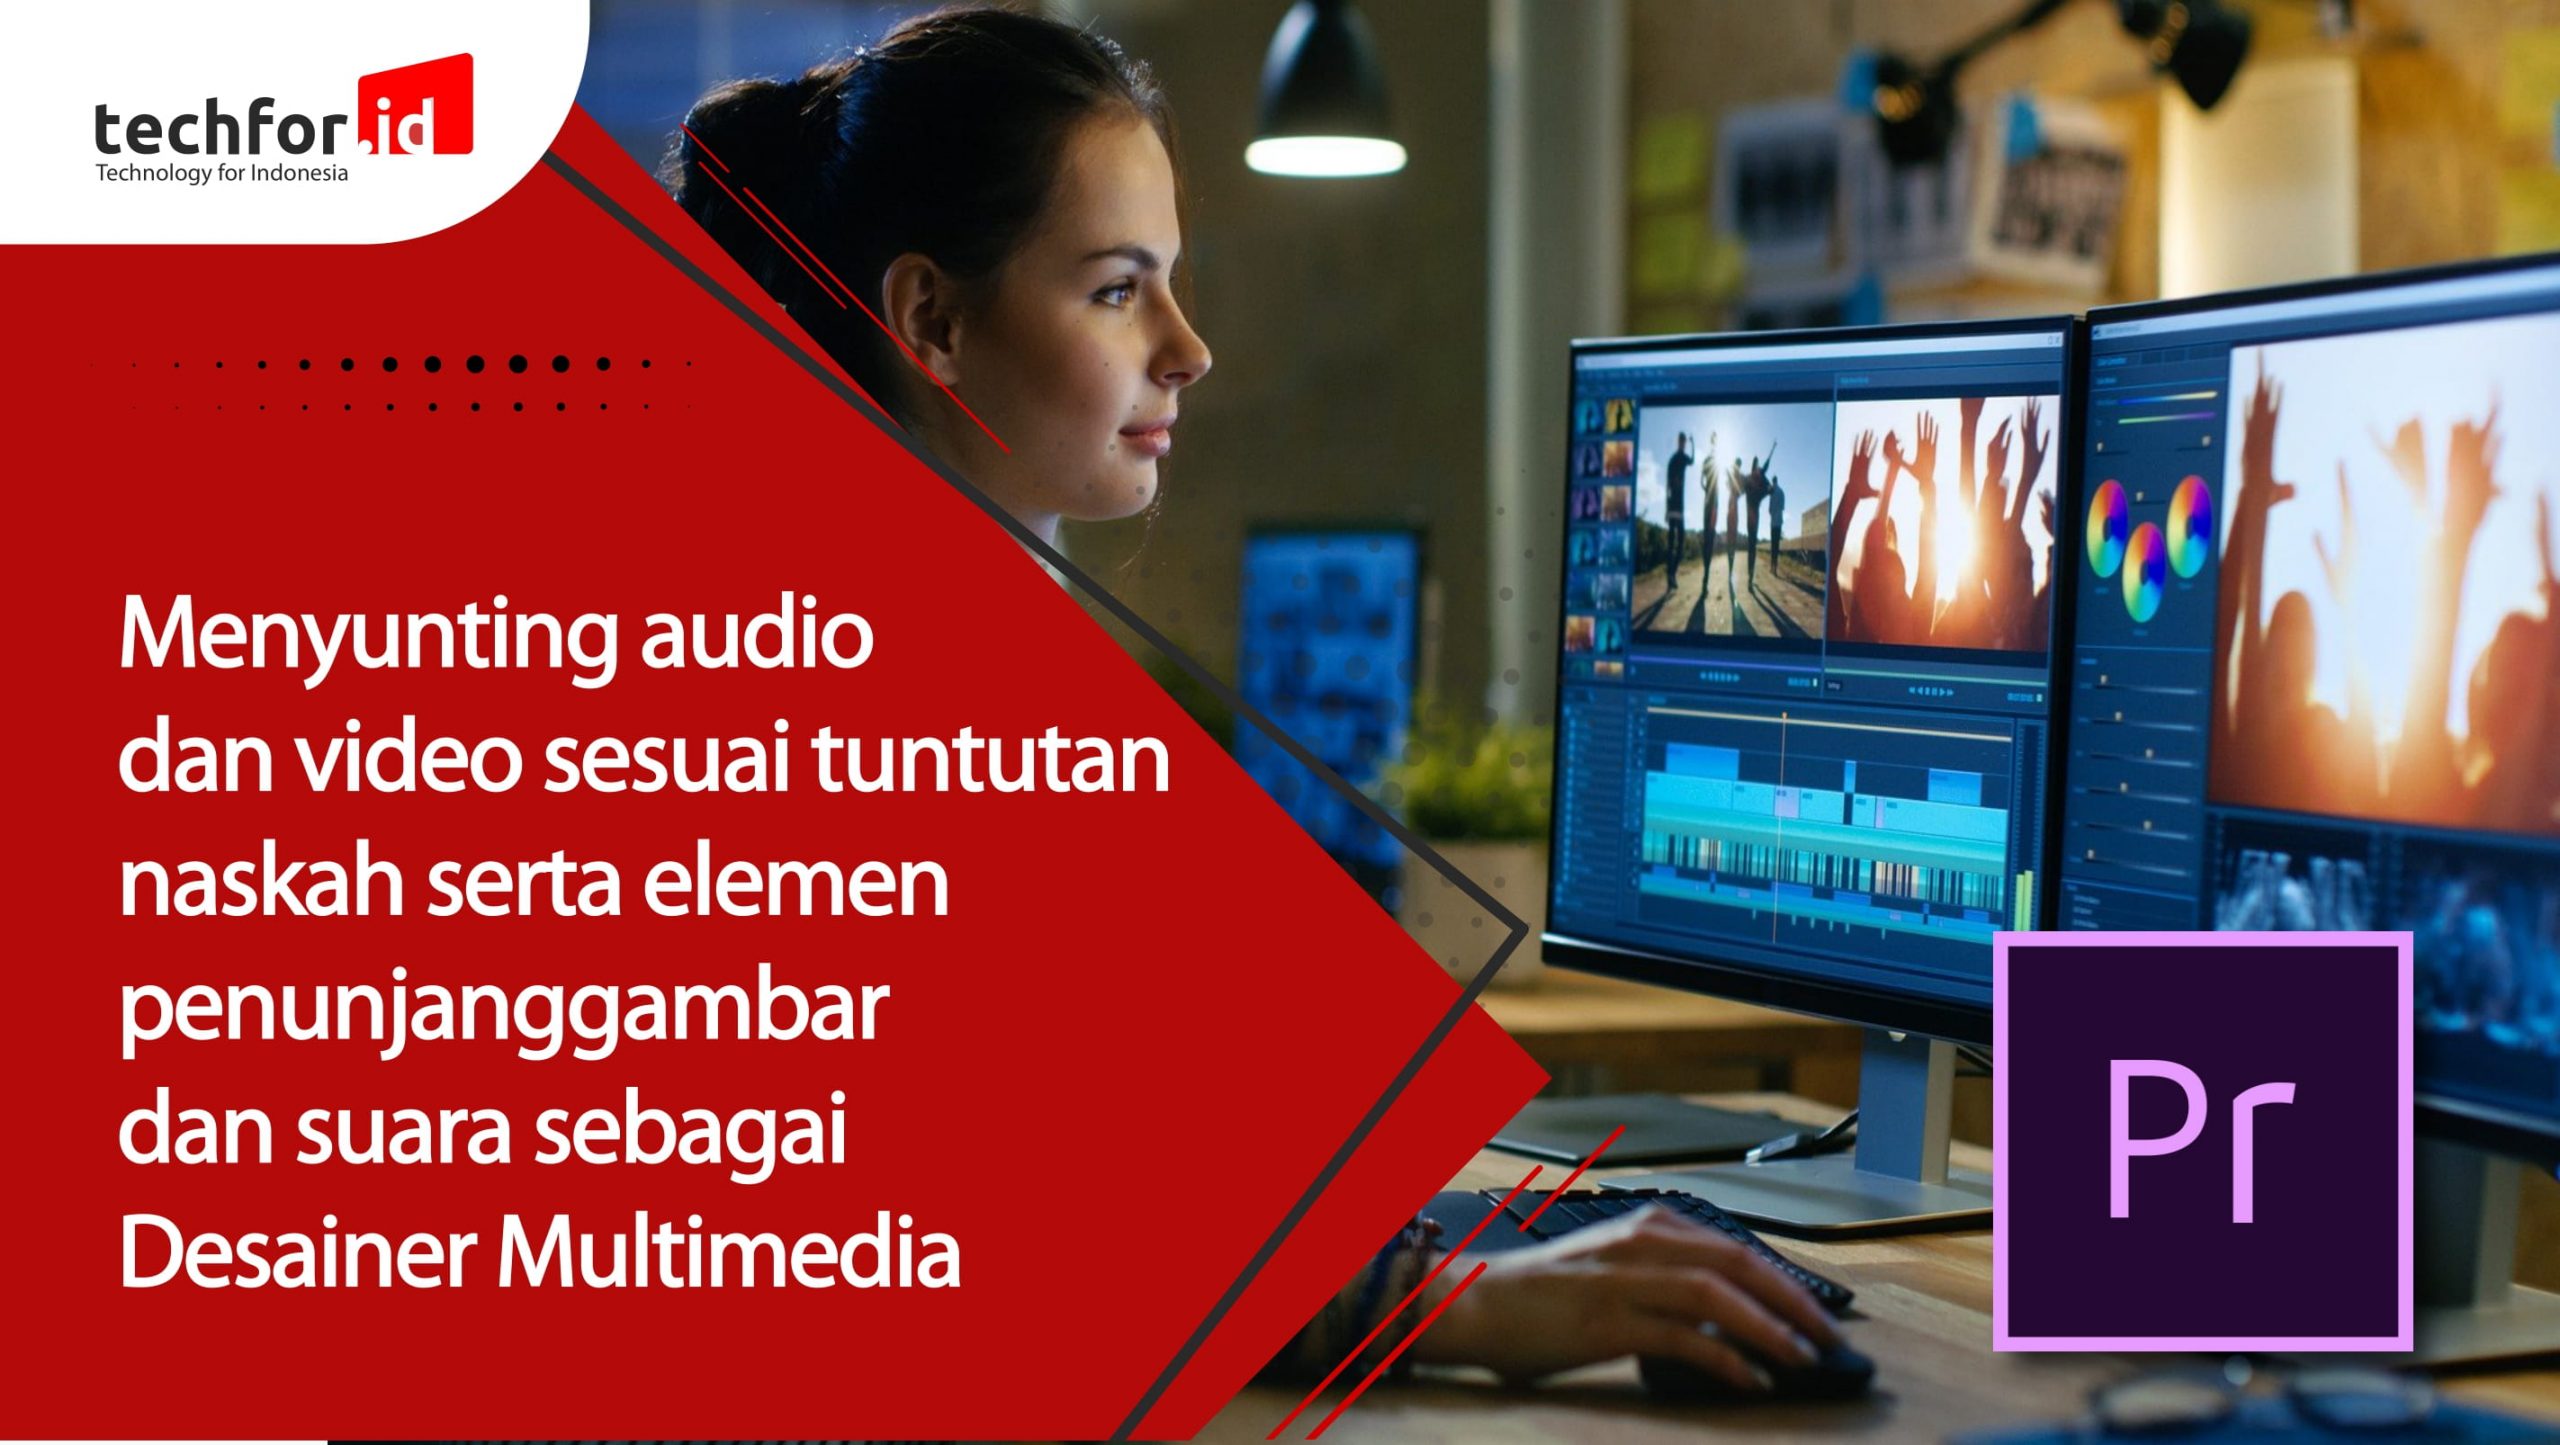 Menyunting audio dan video sesuai tuntutan naskah serta elemen penunjang gambar dan suara sebagai Desainer Multimedia